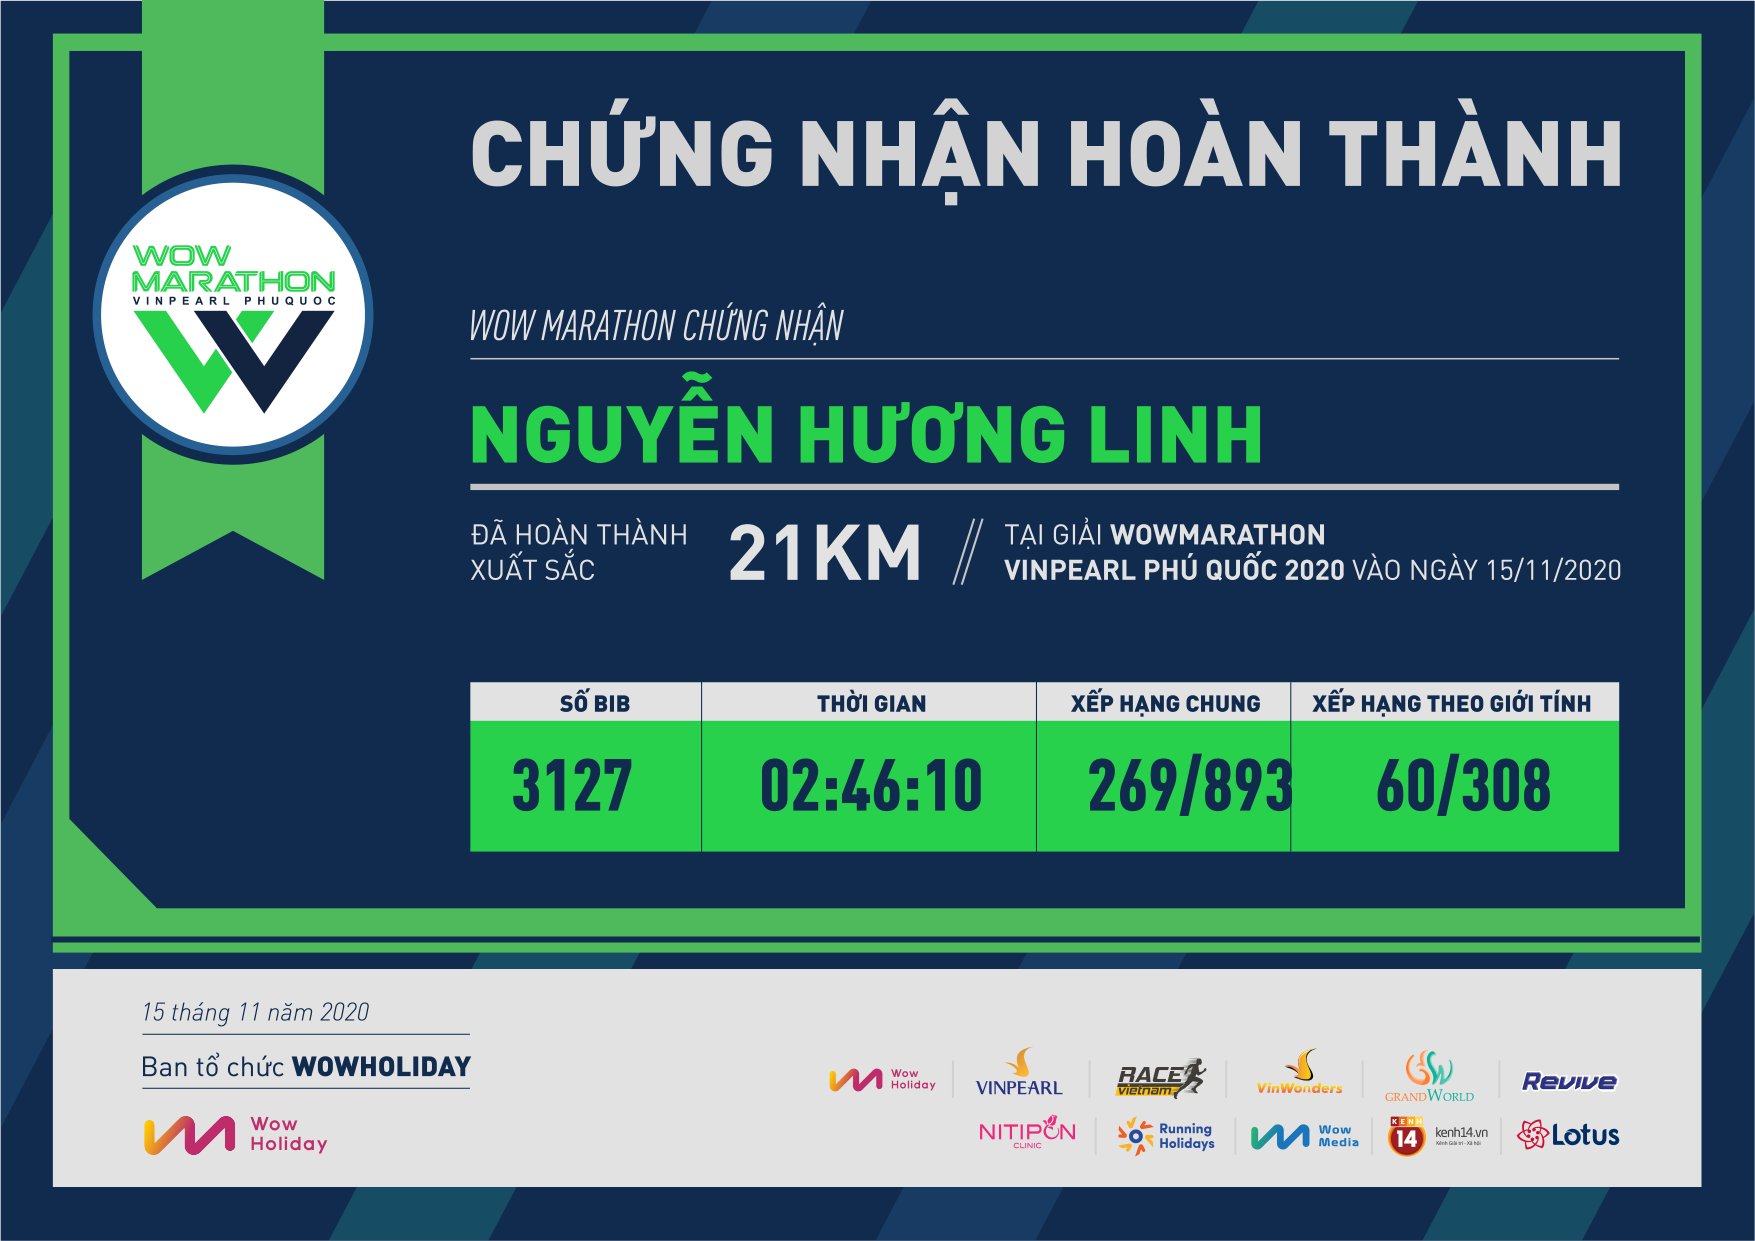 3127 - Nguyễn Hương Linh